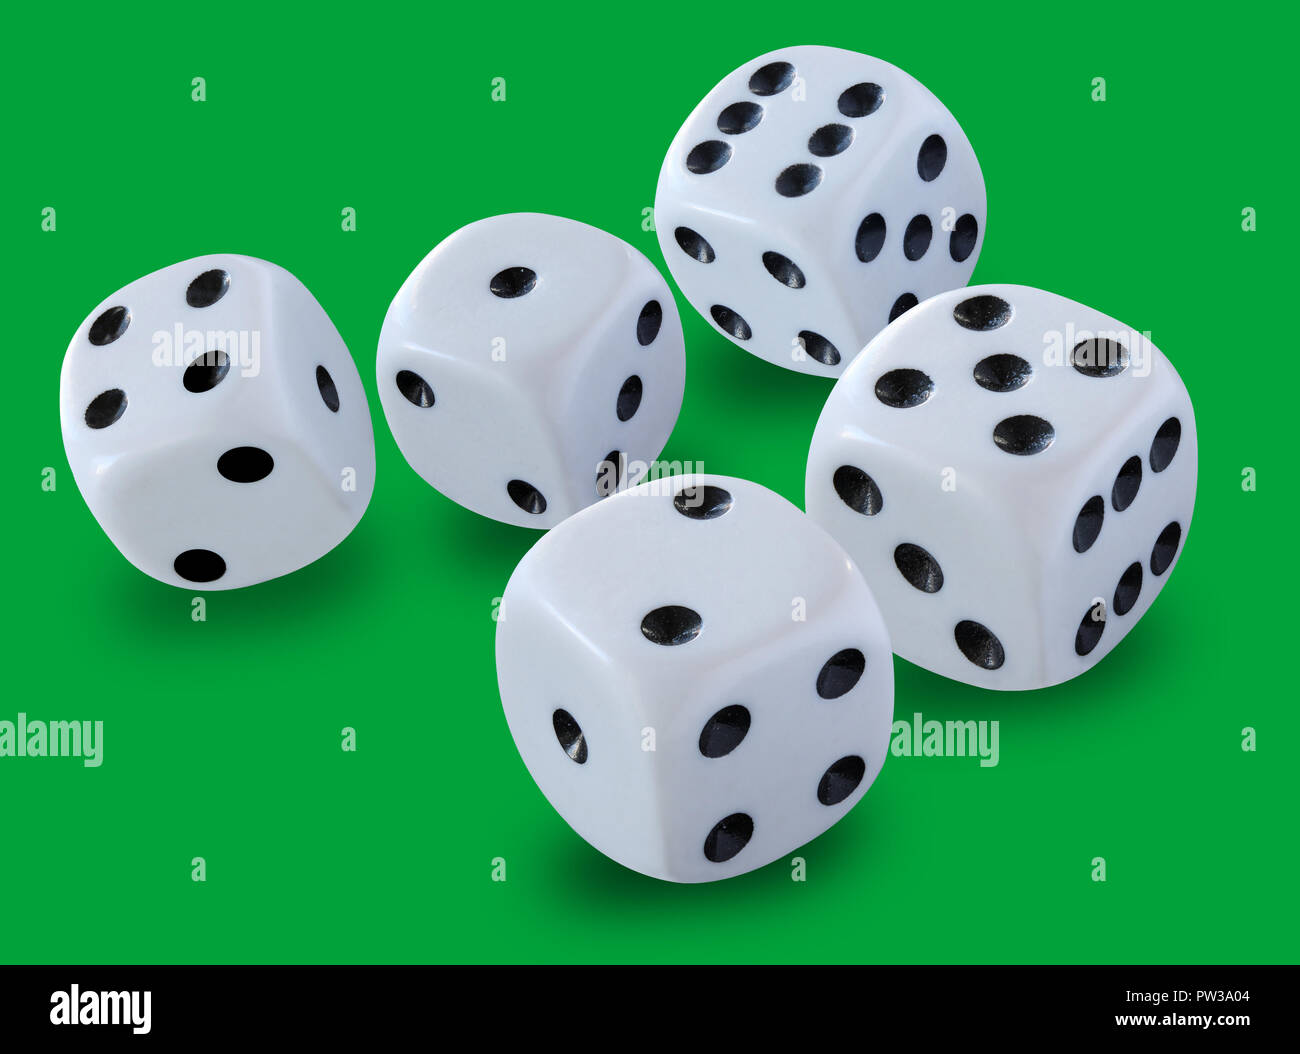 Fünf weißen Würfel unterschiedlicher Größe in einem Craps Spiel Yahtzee oder jede Art von würfelspiel vor einem grünen Hintergrund Stockfoto